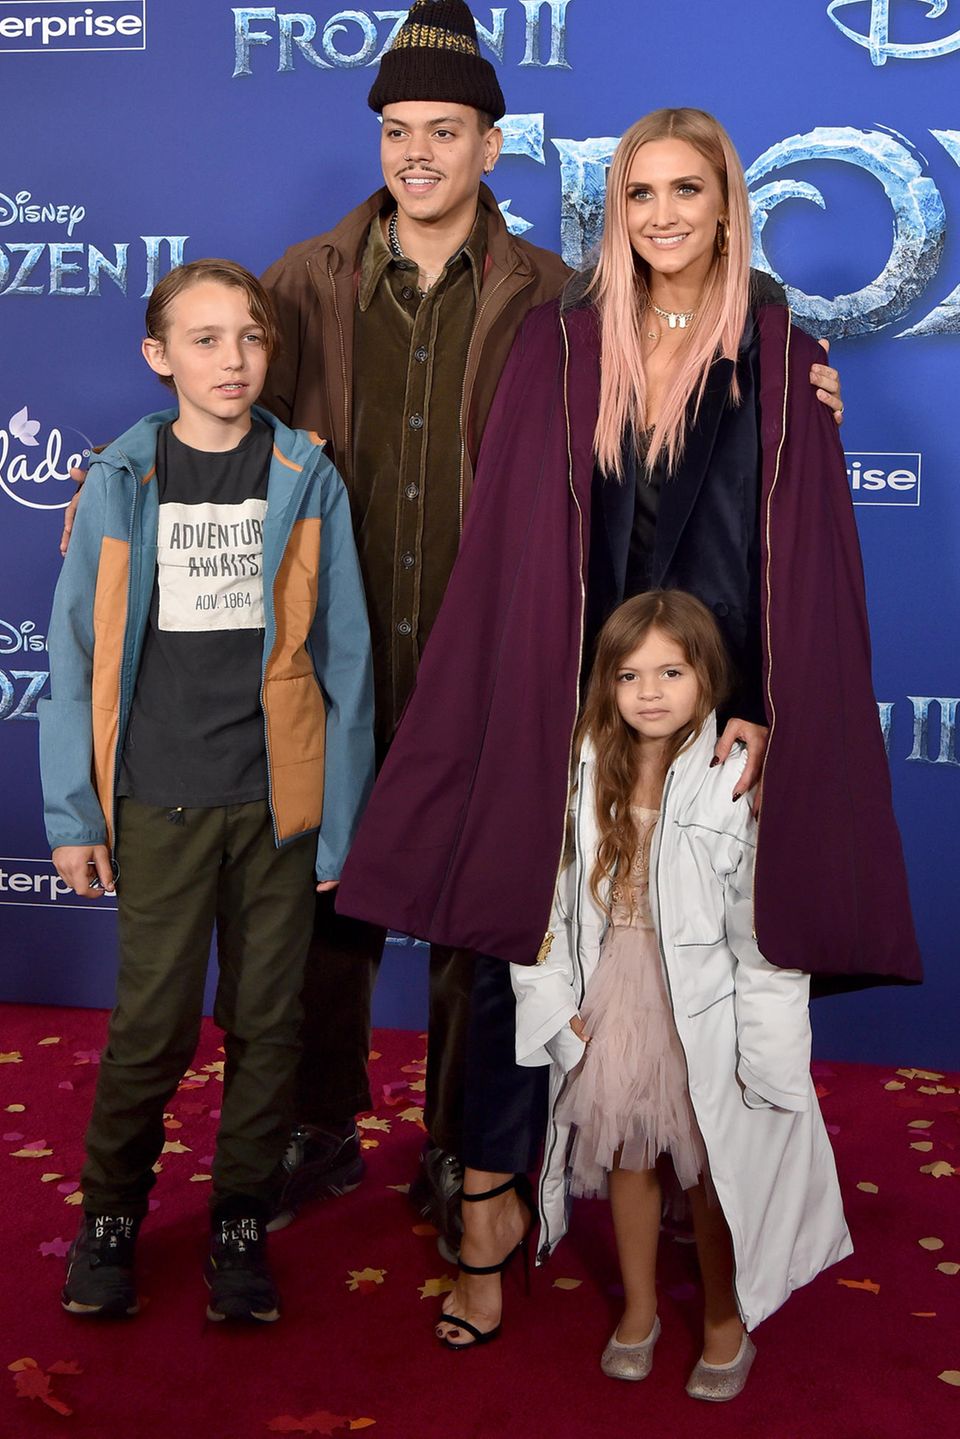 2019 besuchen Evan Ross und Ashlee Simpson mit den Kindern die "Frozen 2"-Premiere in Hollywood und wir staunen nicht schlecht, wie groß Bronx und Jagger nun schon sind und wie sie sich verändert haben. 